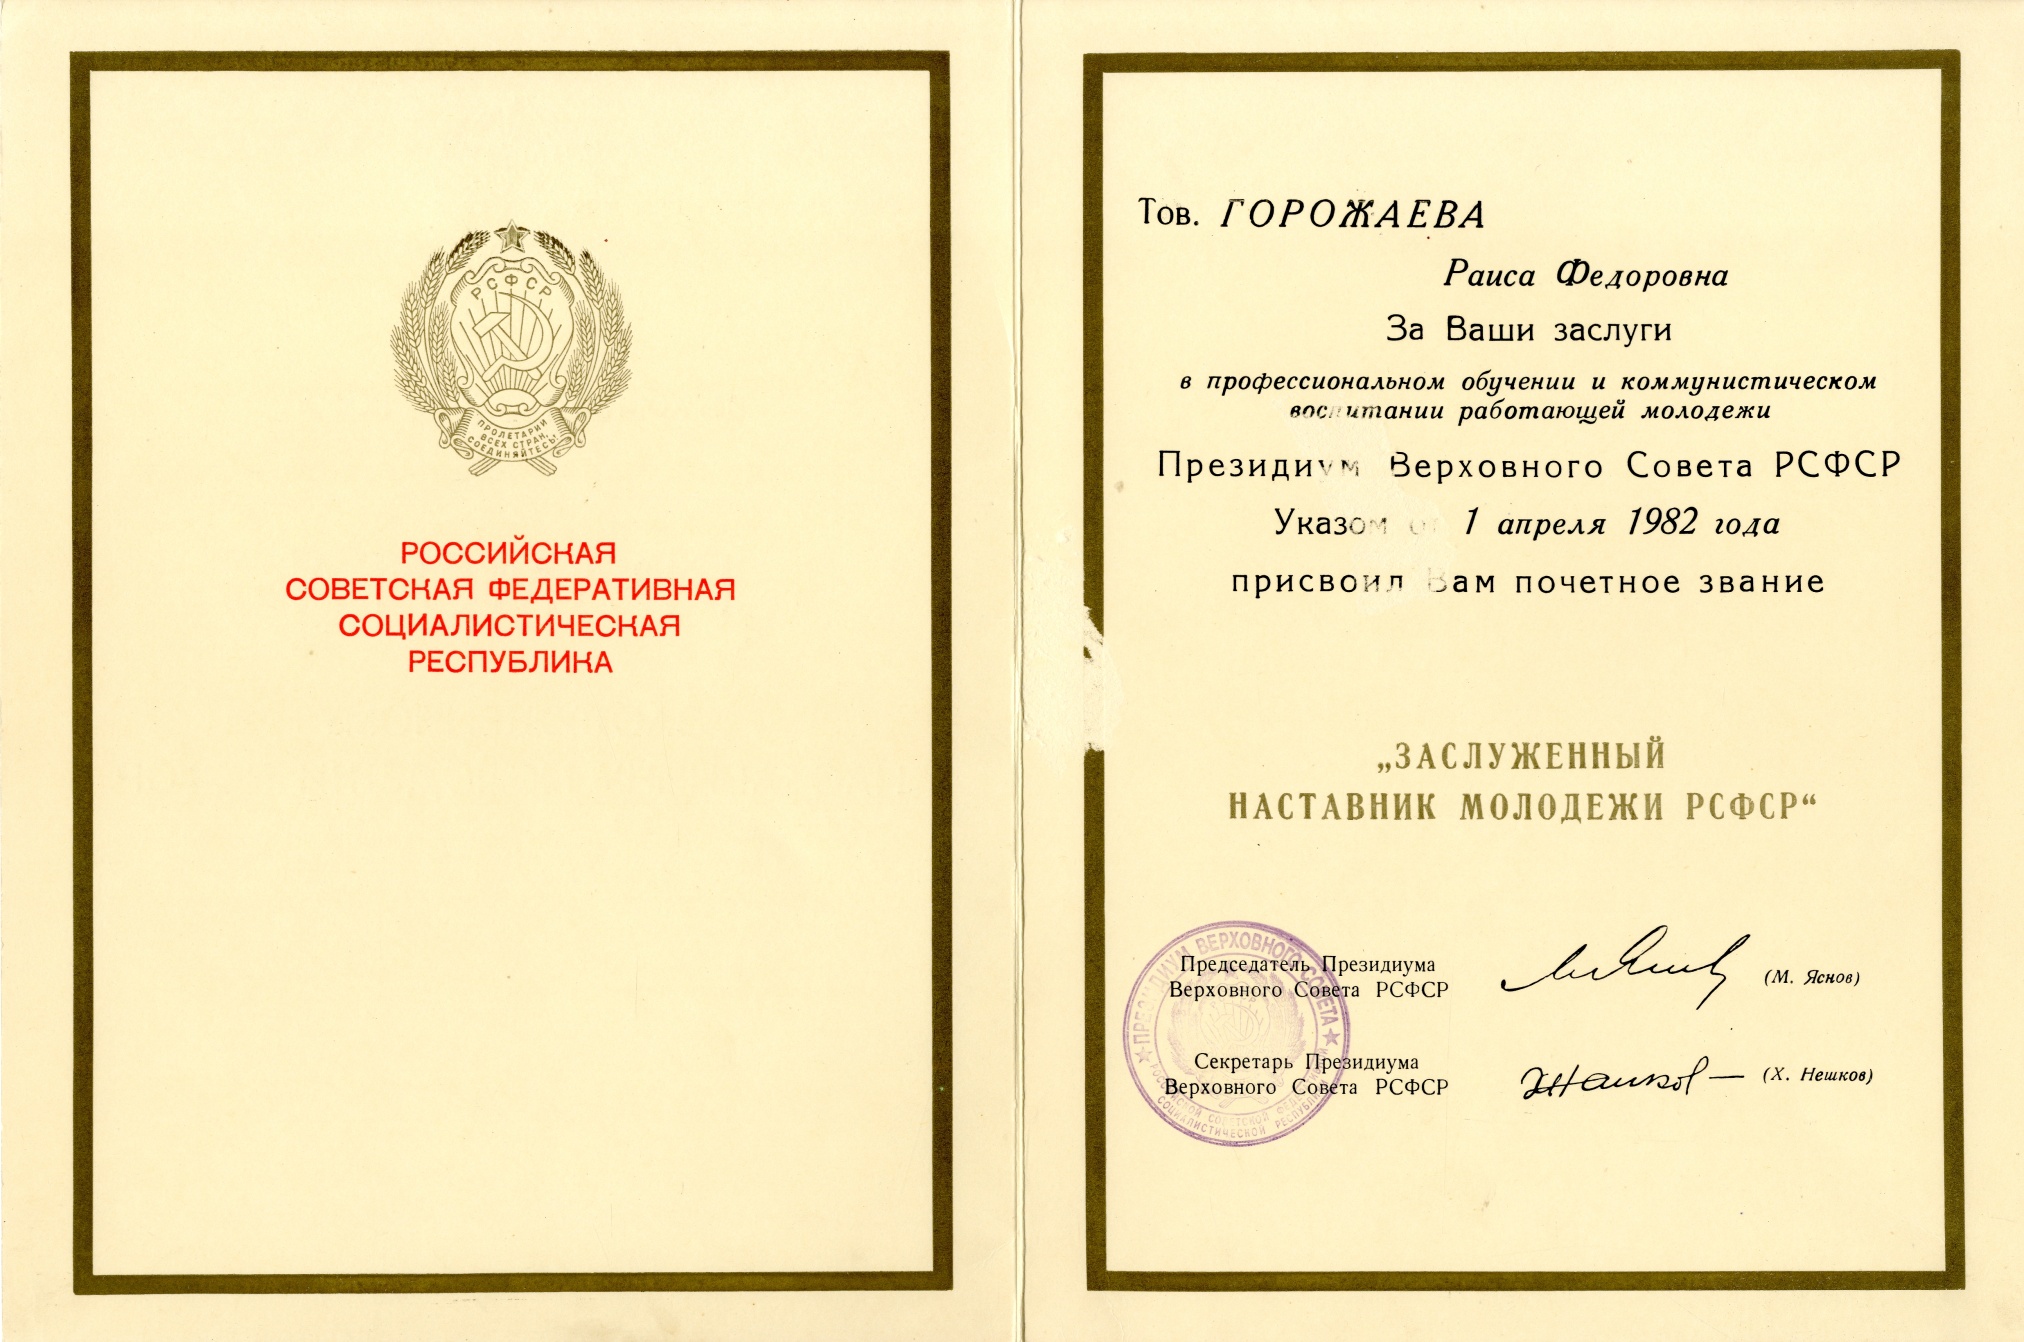 Грамота заслуженному наставнику молодежи РСФСР Горожаевой Р.Ф. 1982